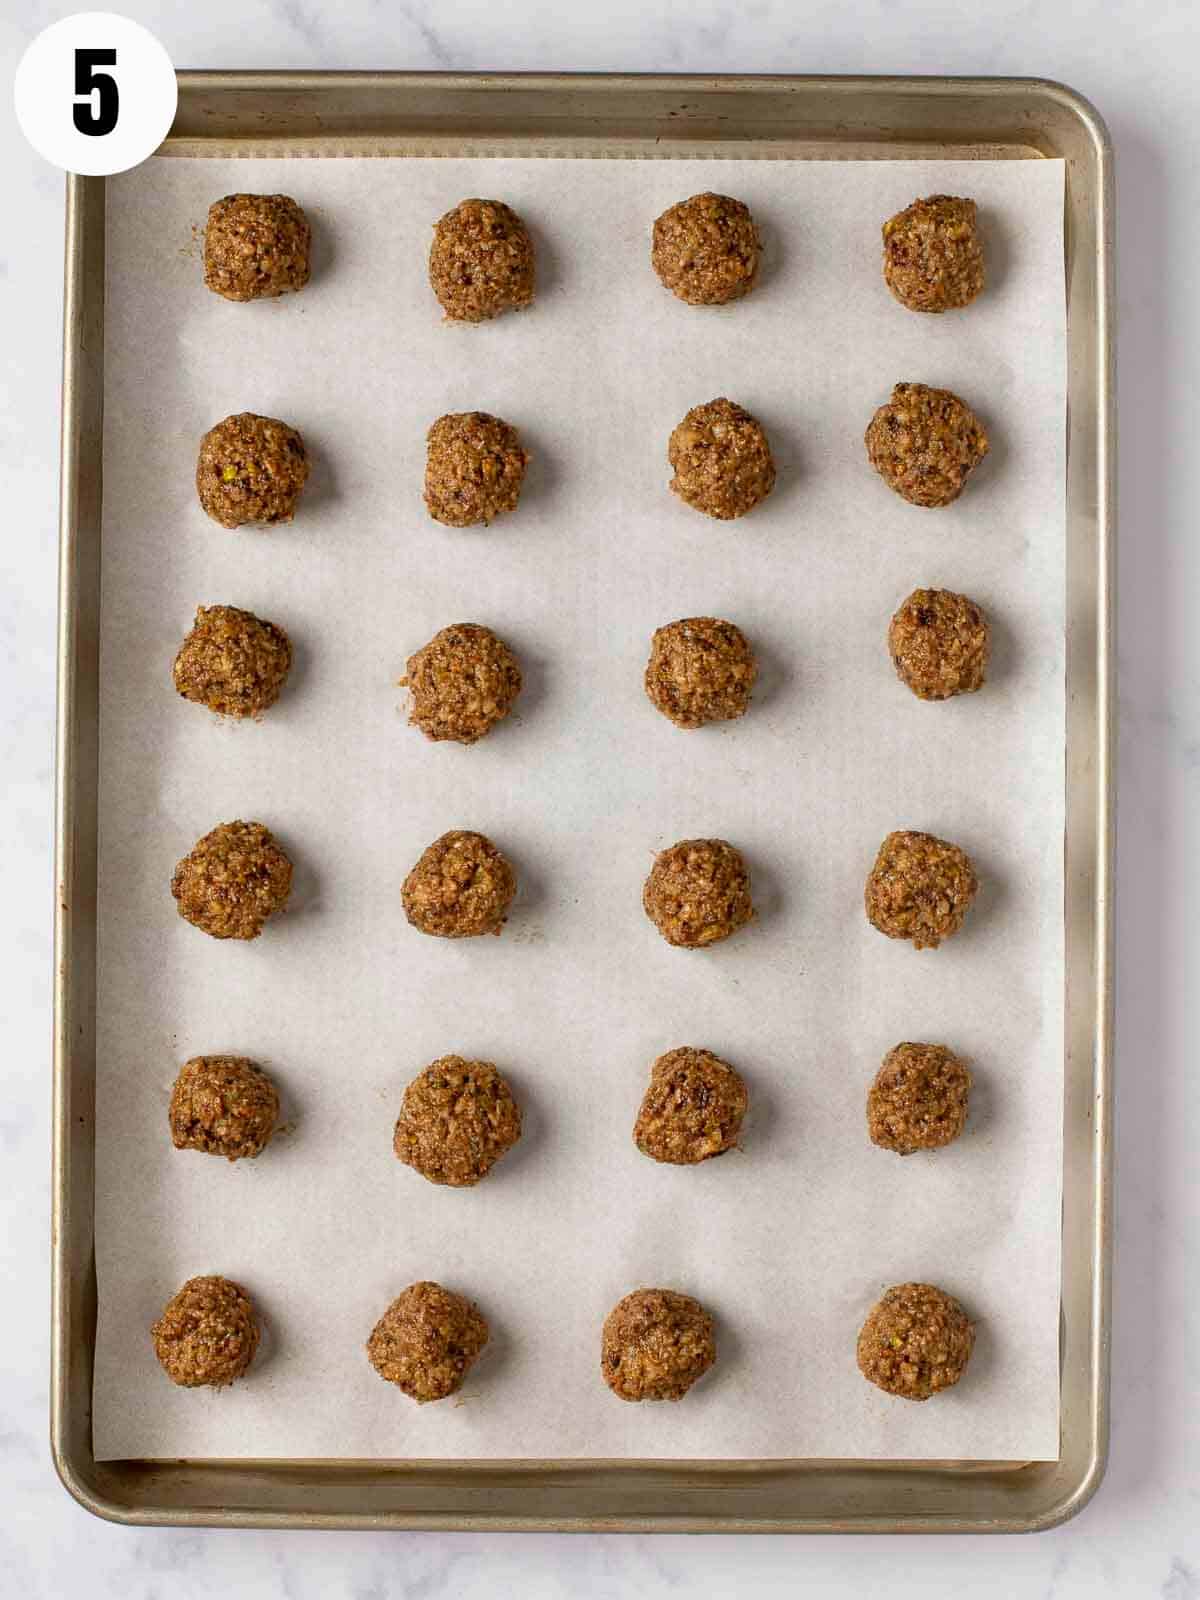 Rolled charoset balls on a baking sheet.